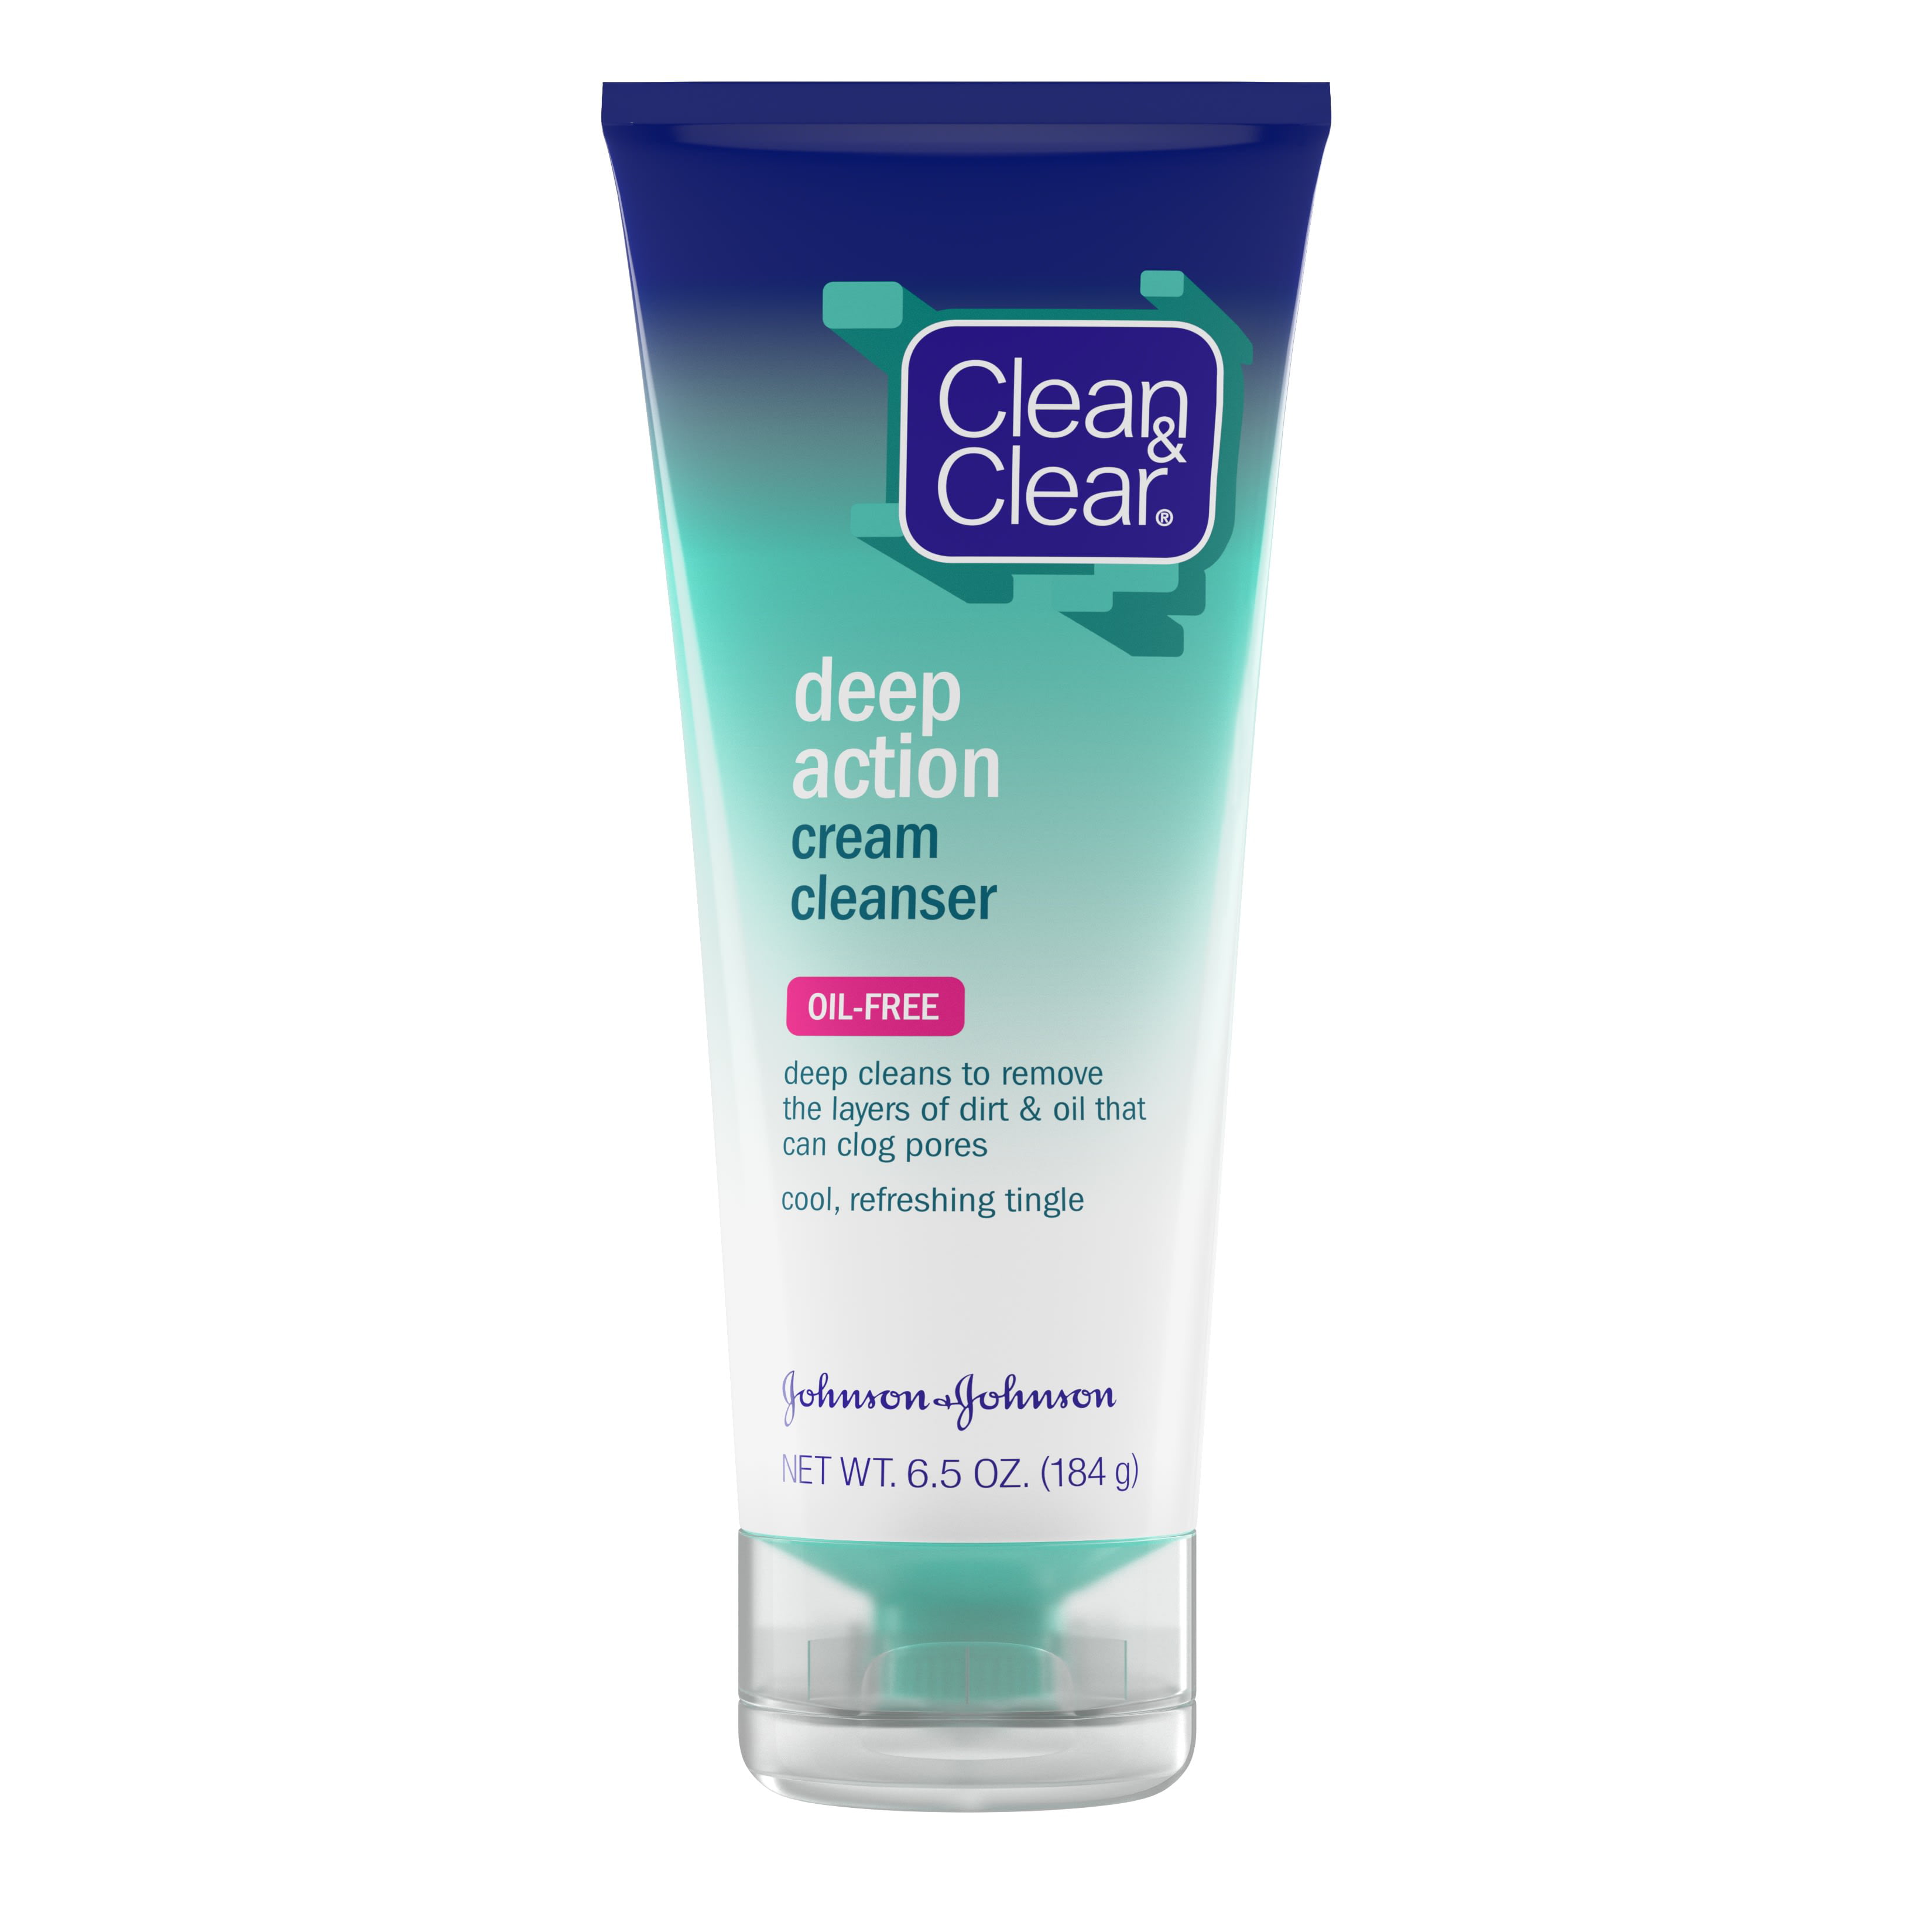 Clean & Clear Oil-Free Deep Action Cream Facial Cleanser, 6.5 oz